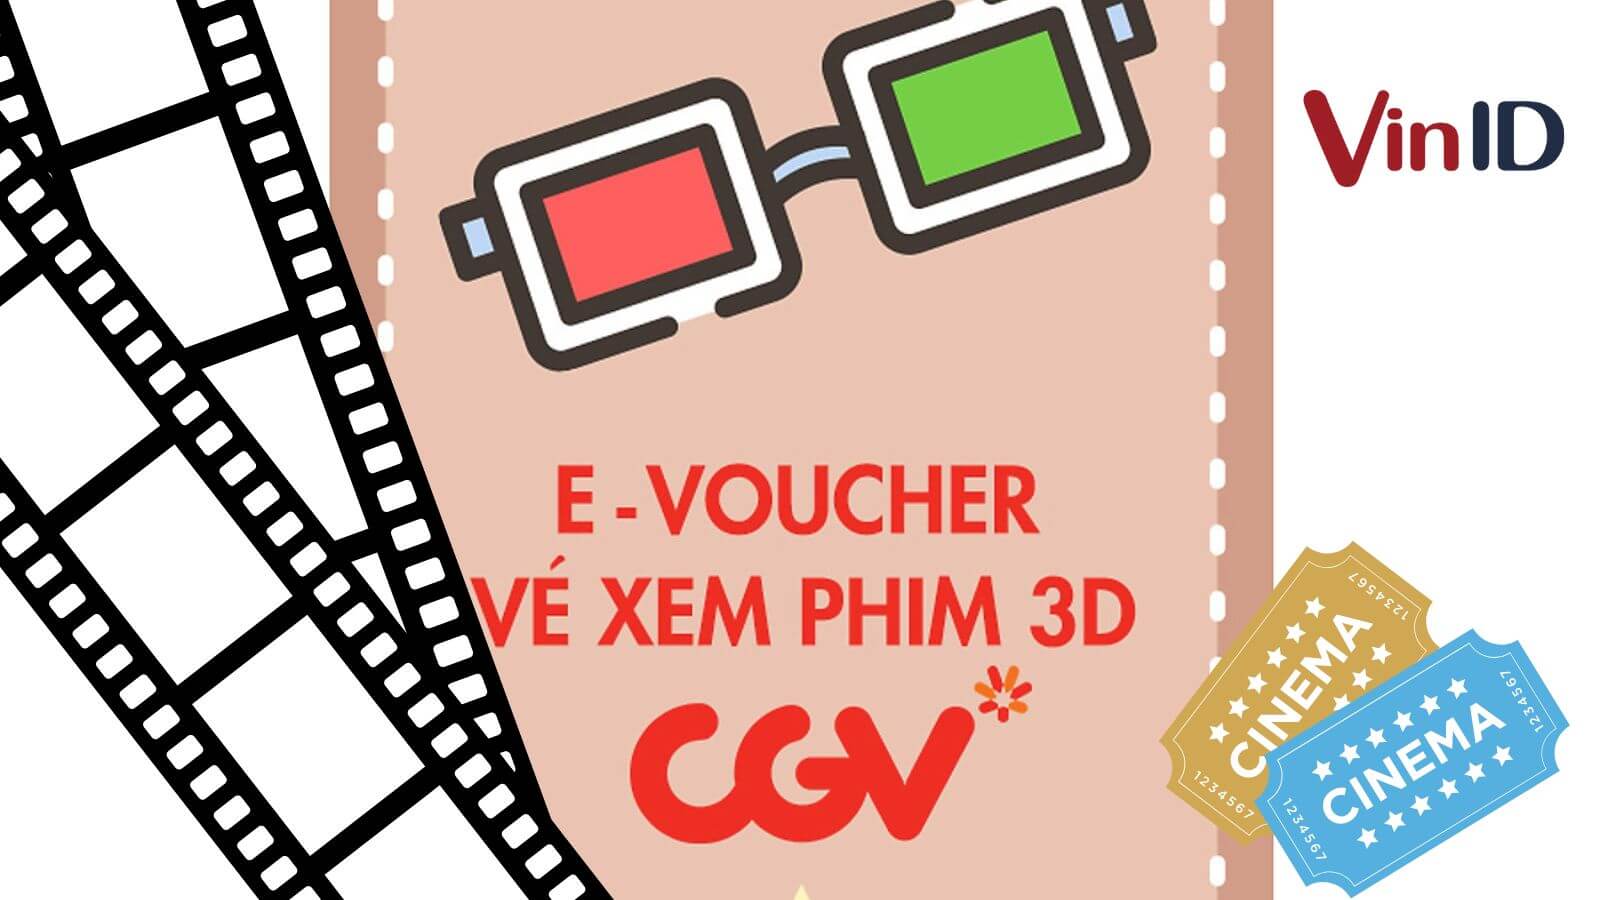 CGV Cinemas Vietnam  Các thành viên có sinh nhật trong THÁNG 2 điểm  danh Cùng ra rạp xem phim hay đổi quà sinh nhật ngay CGV dành tặng combo  1 Bắp